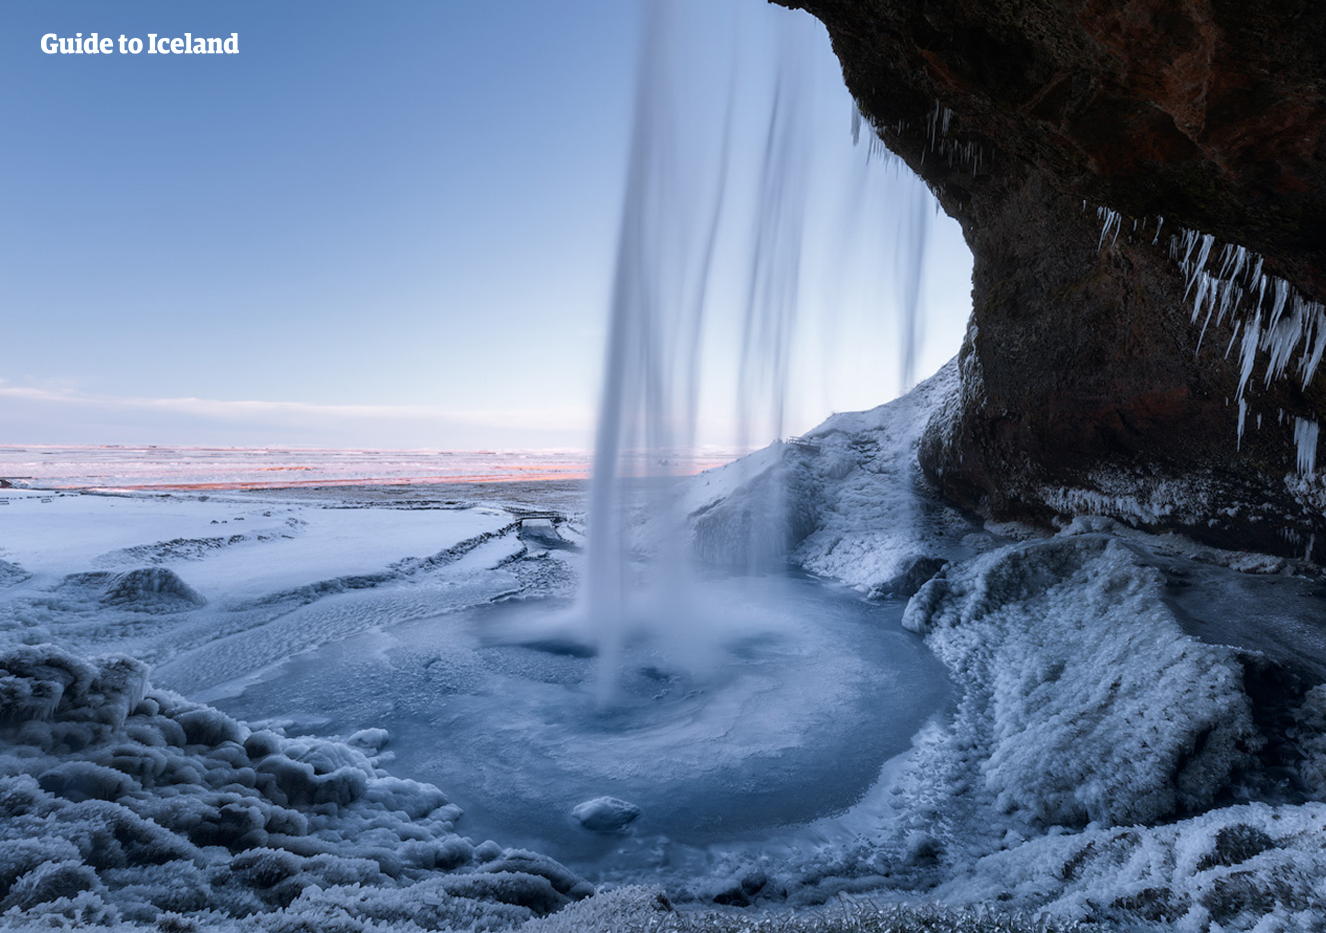 La vista gelida da dietro l'acqua della cascata di Seljalandsfoss sulla costa meridionale dell'Islanda.